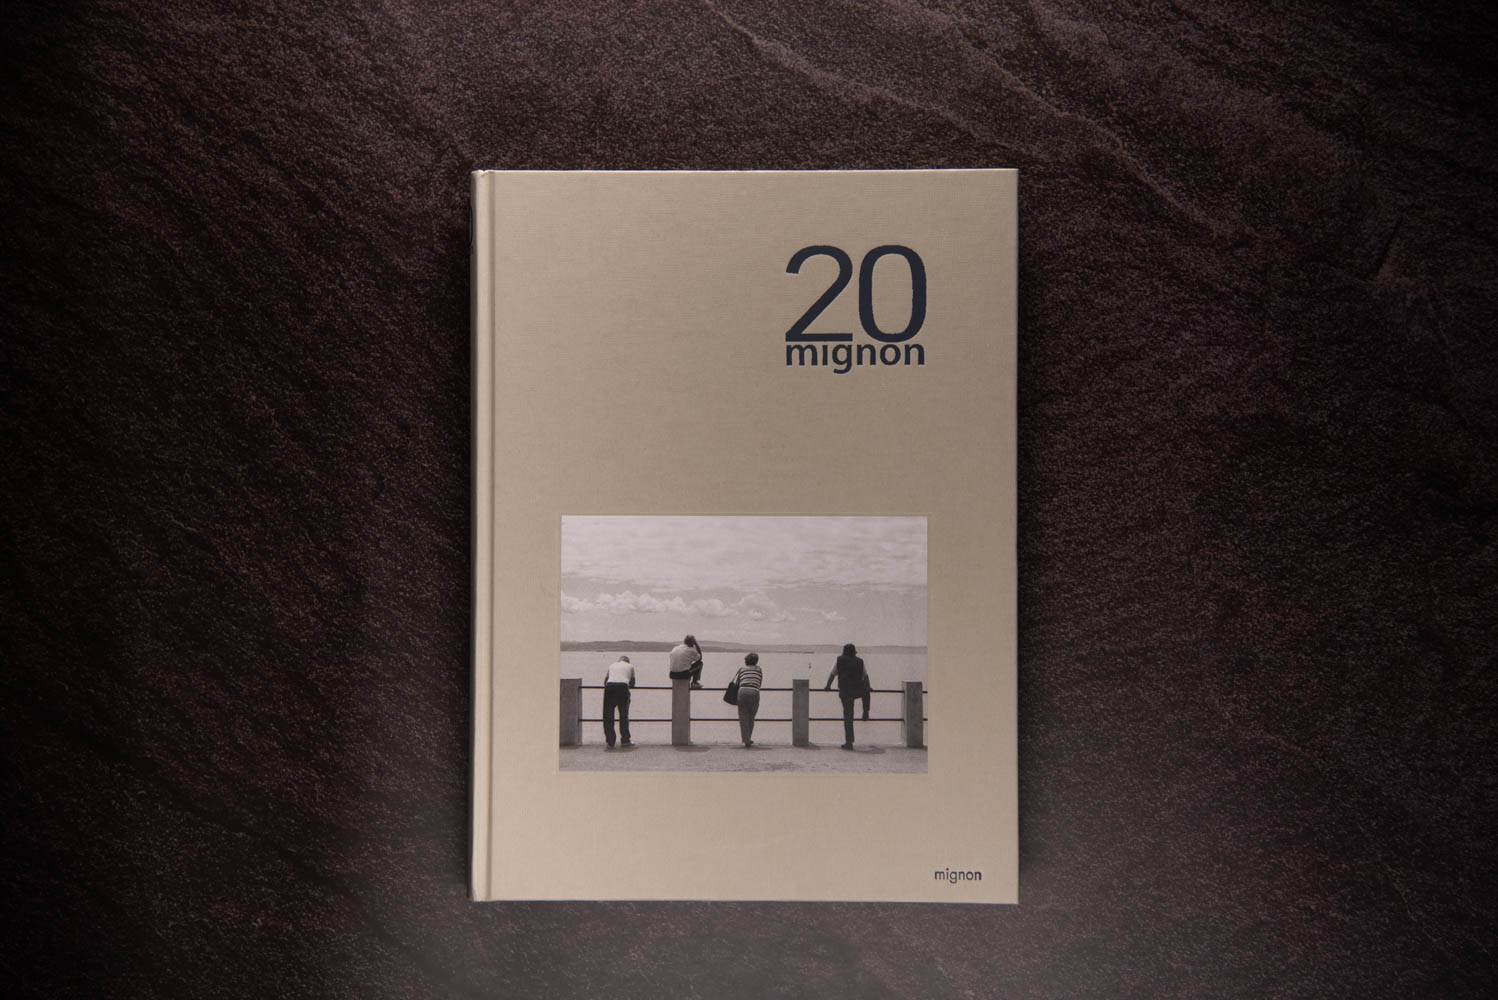 20 mignon book andrea scirè1 - Mignon, una attenta e garbata visione dell’umano vivere - fotostreet.it